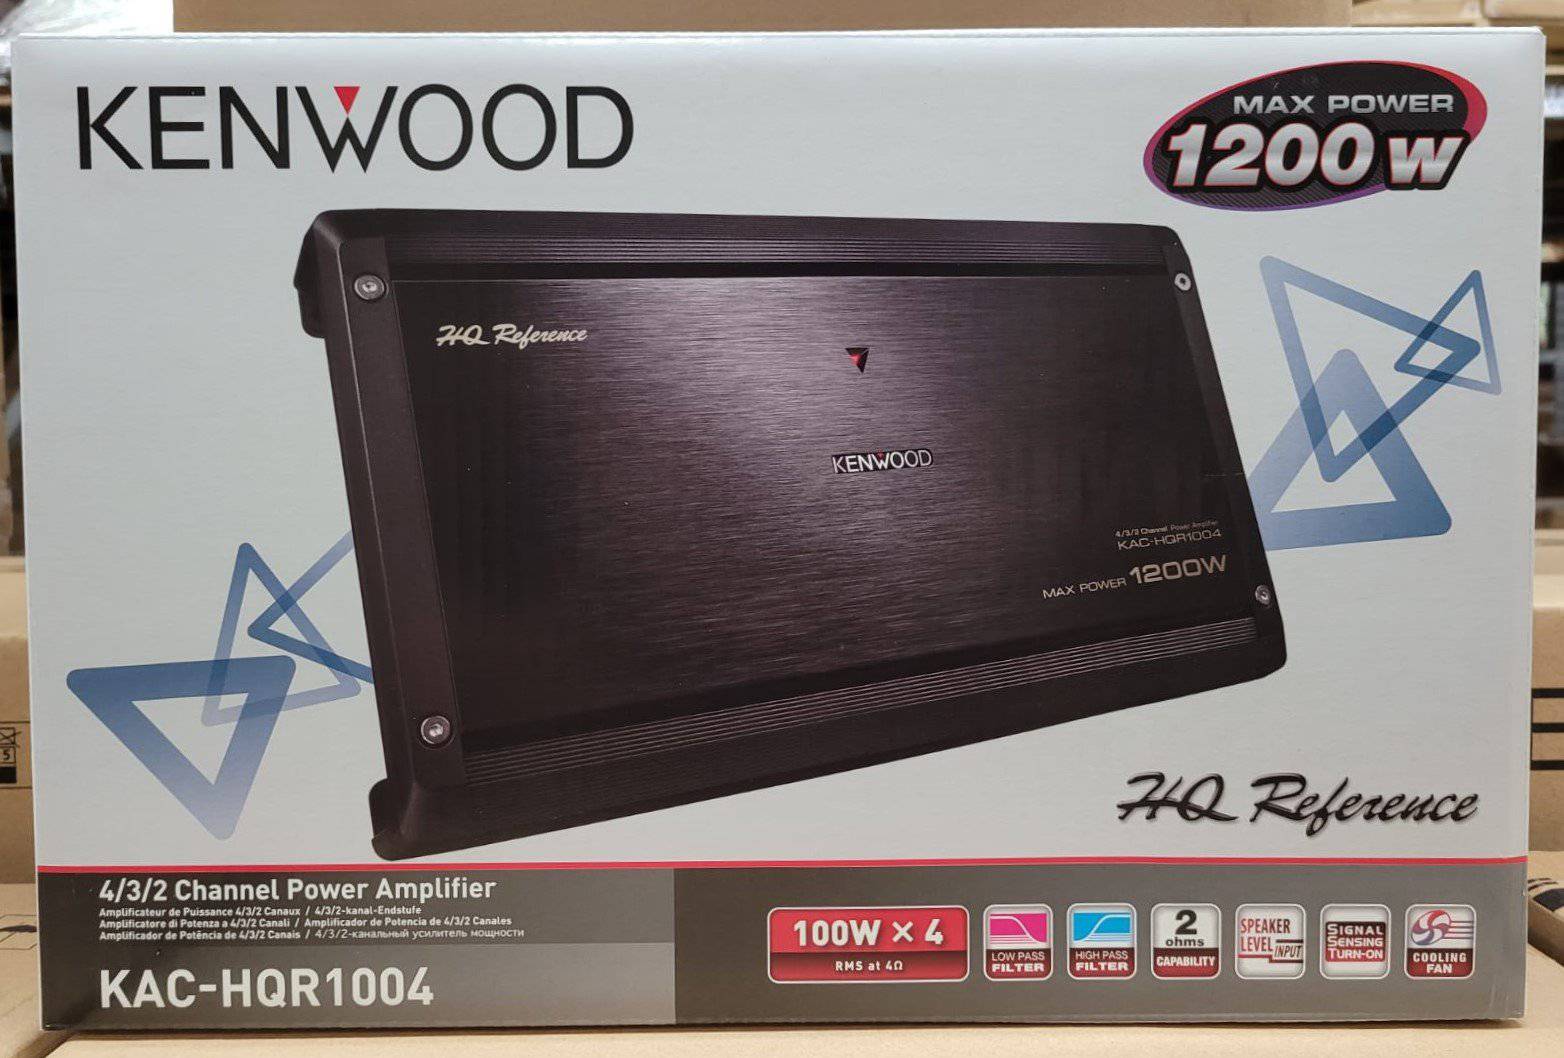 Kenwood PC-1200